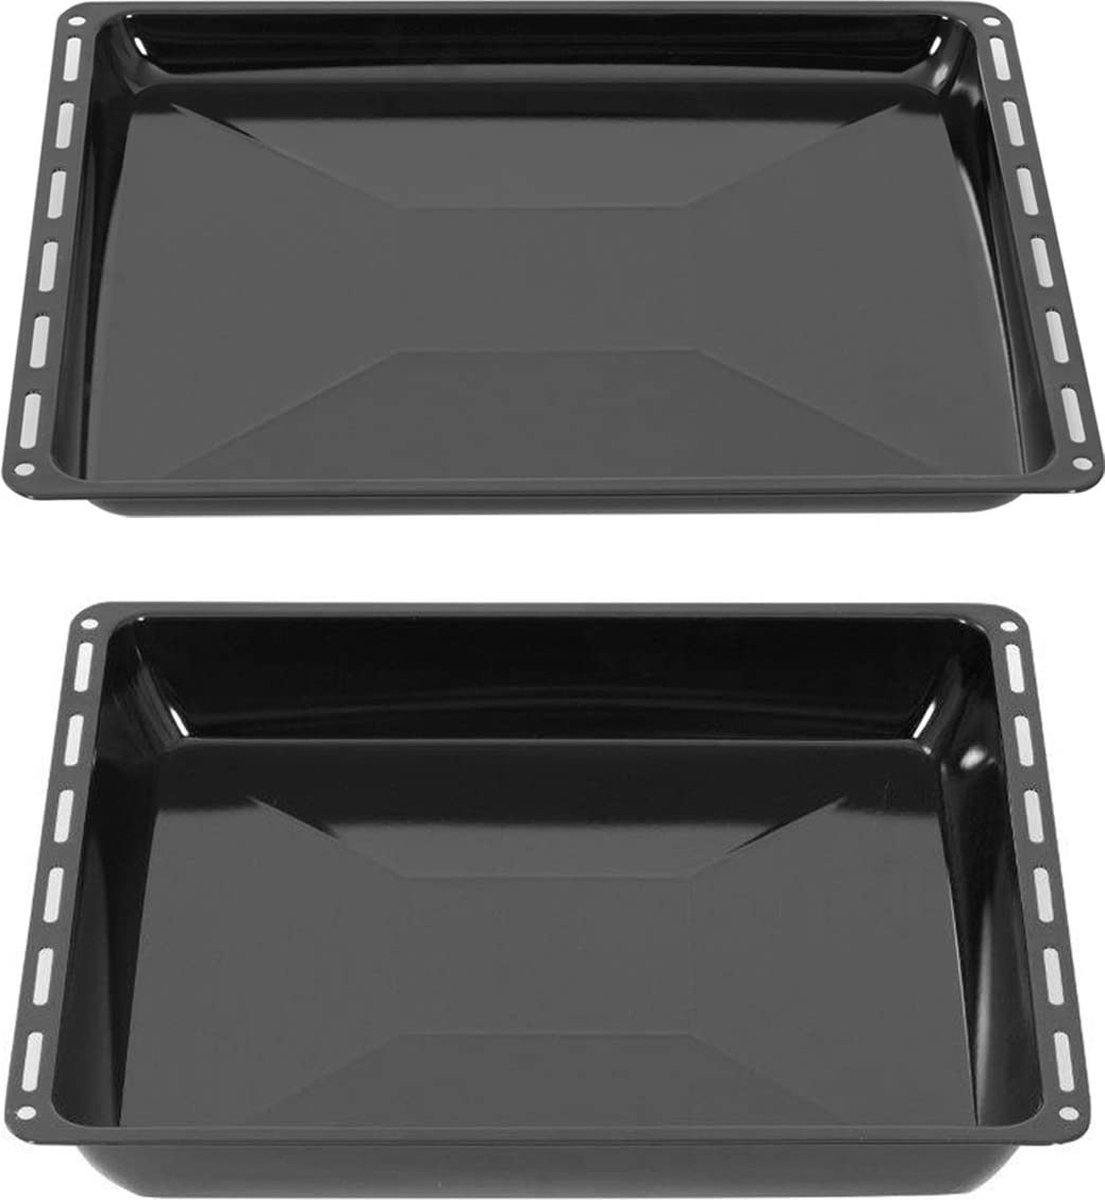 ICQN Oven Bakplaat Set - 2 stuks - 422x375x25 mm en 422x375x60 mm - Geëmailleerd